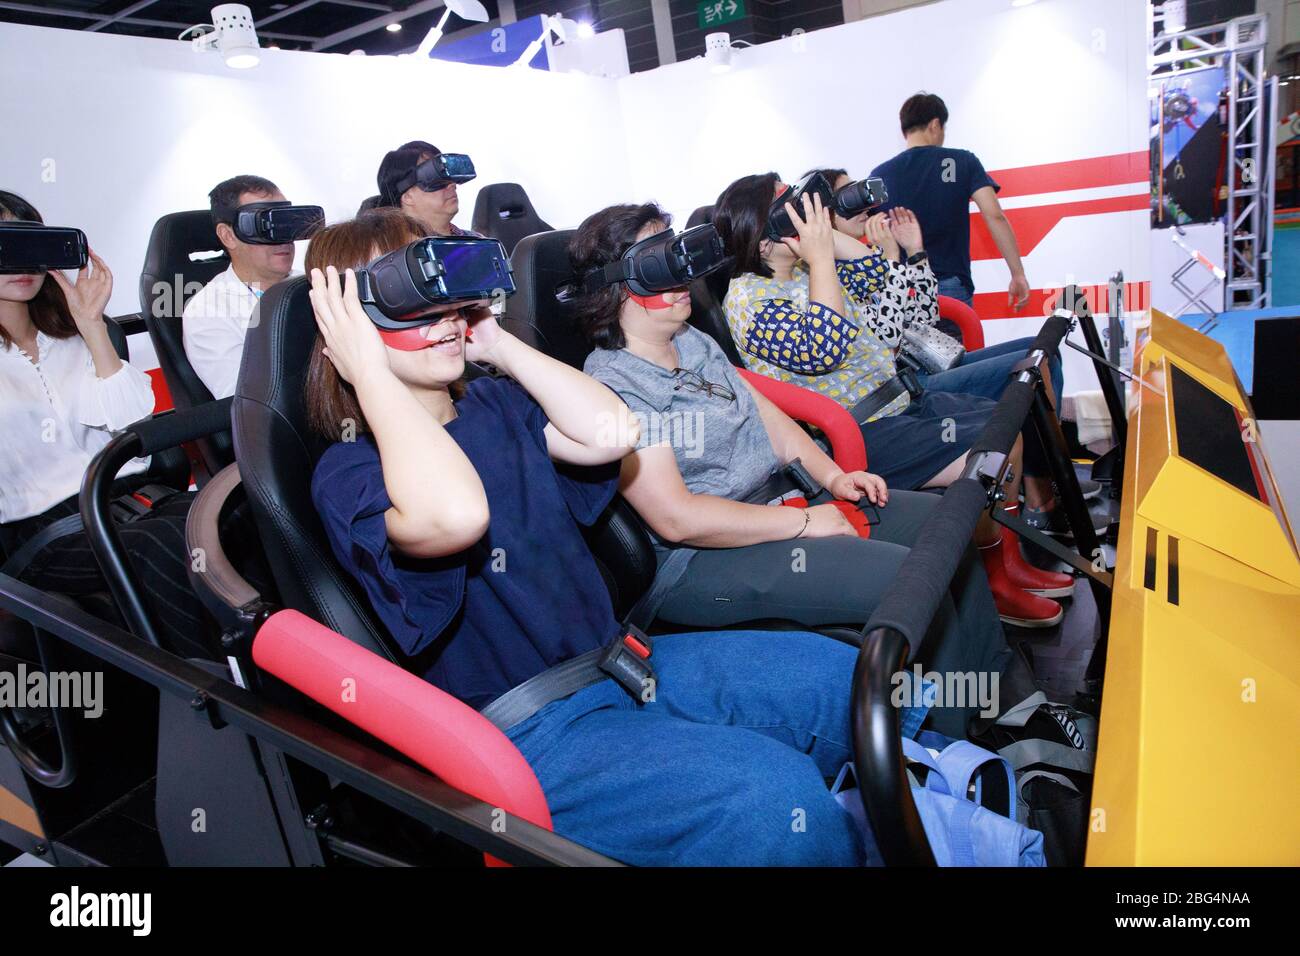 Un pequeño grupo de personas experimenta un paseo de diversión de realidad virtual Foto de stock